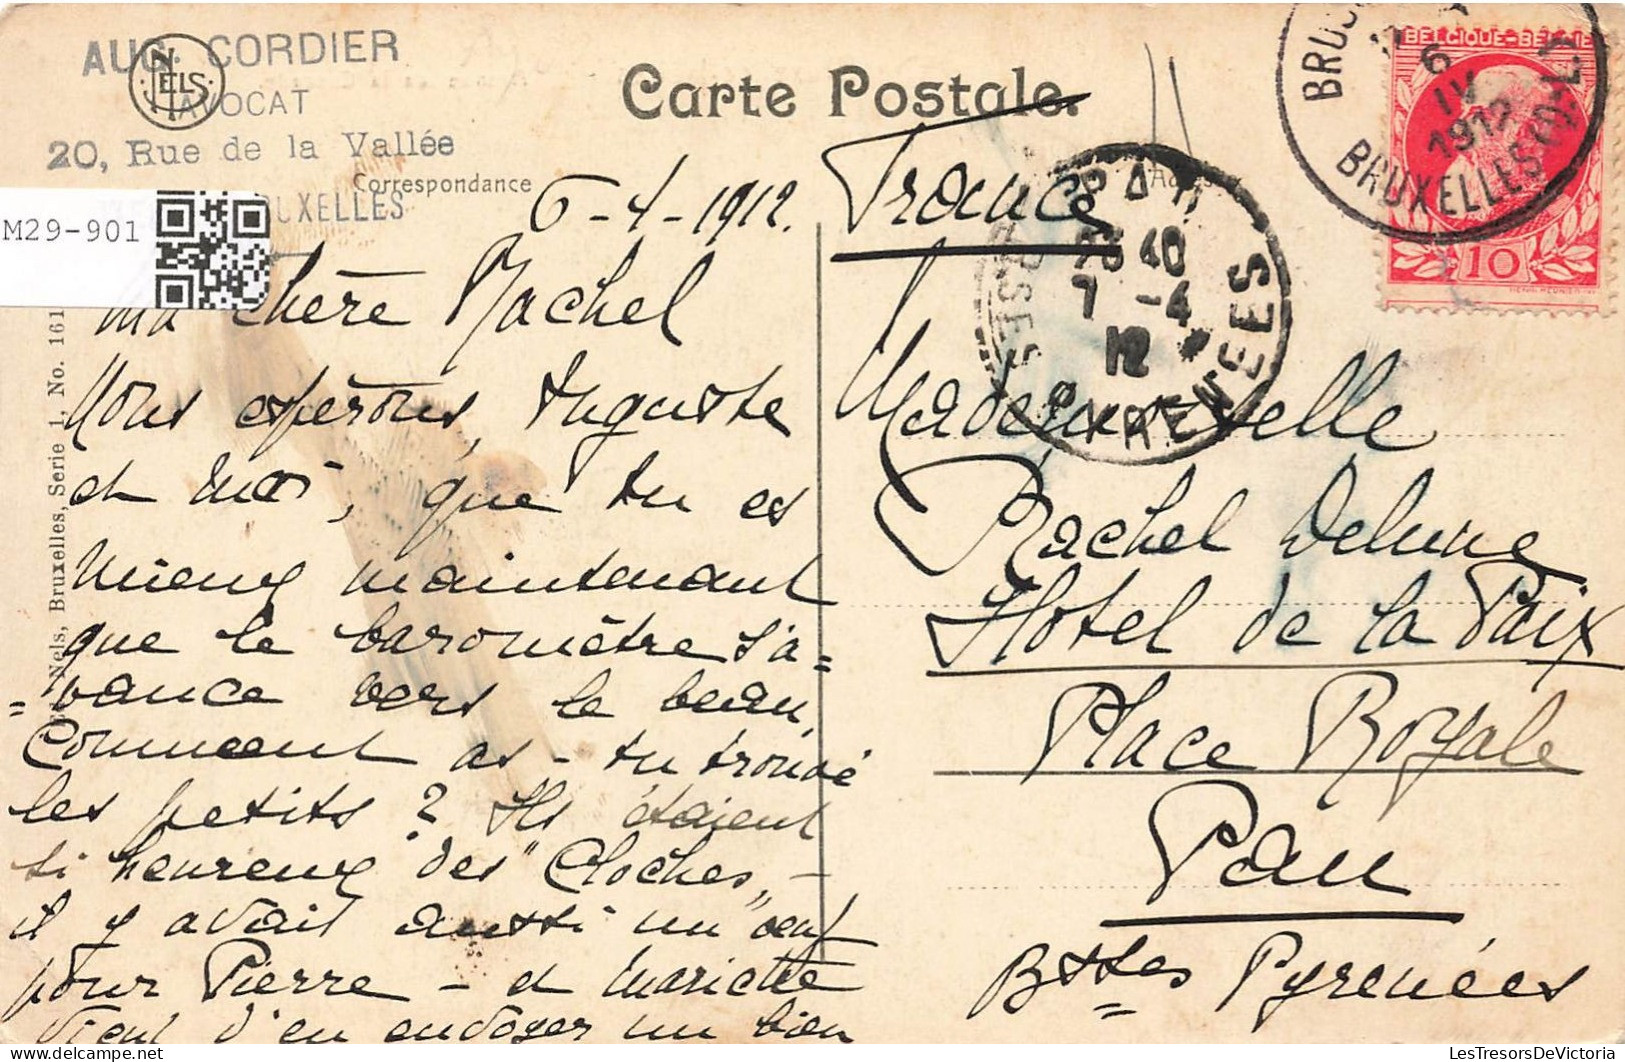 BELGIQUE - Bruxelles - Ixelles - Avenue De La Cascade - Carte Postale Ancienne - Ixelles - Elsene